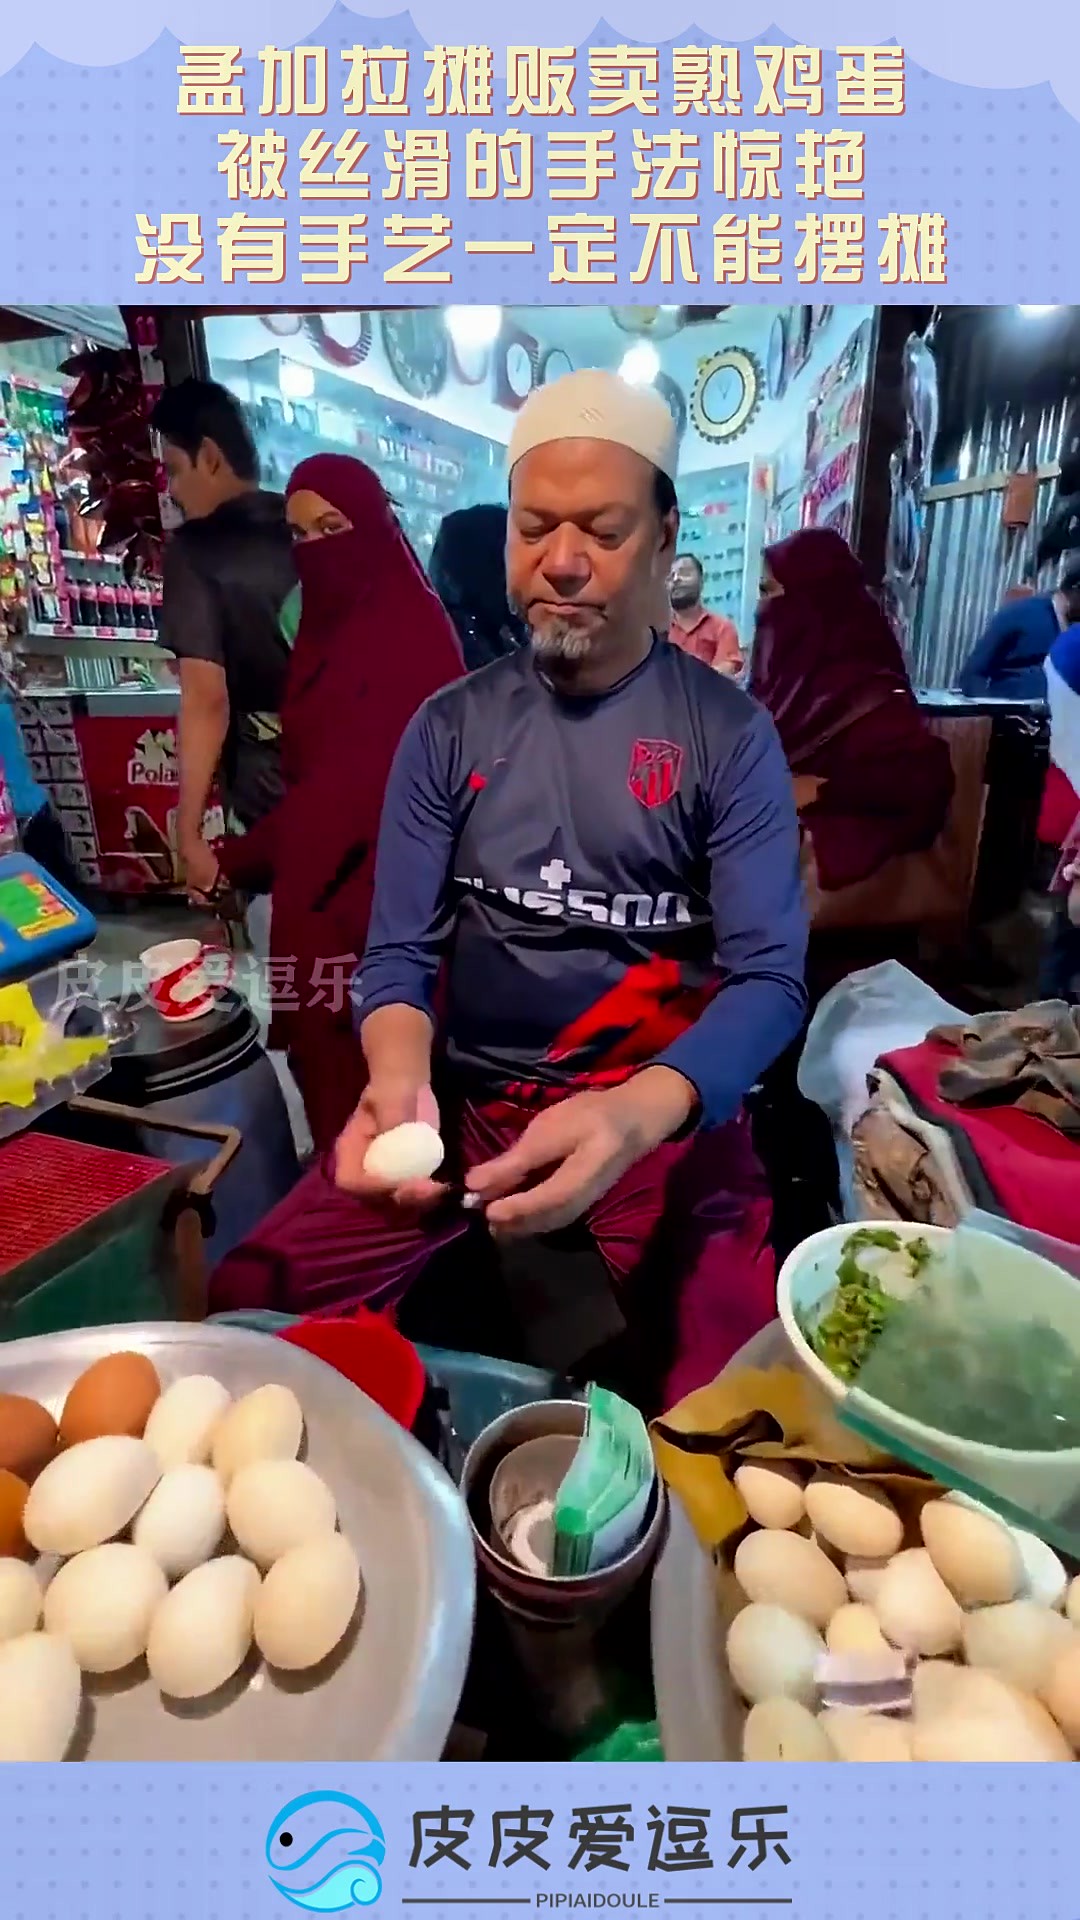 孟加拉摊贩卖熟鸡蛋，被丝滑的手法惊艳，没有手艺一定不能摆摊！#搞笑 #奇趣 #社会 #搞笑段子 